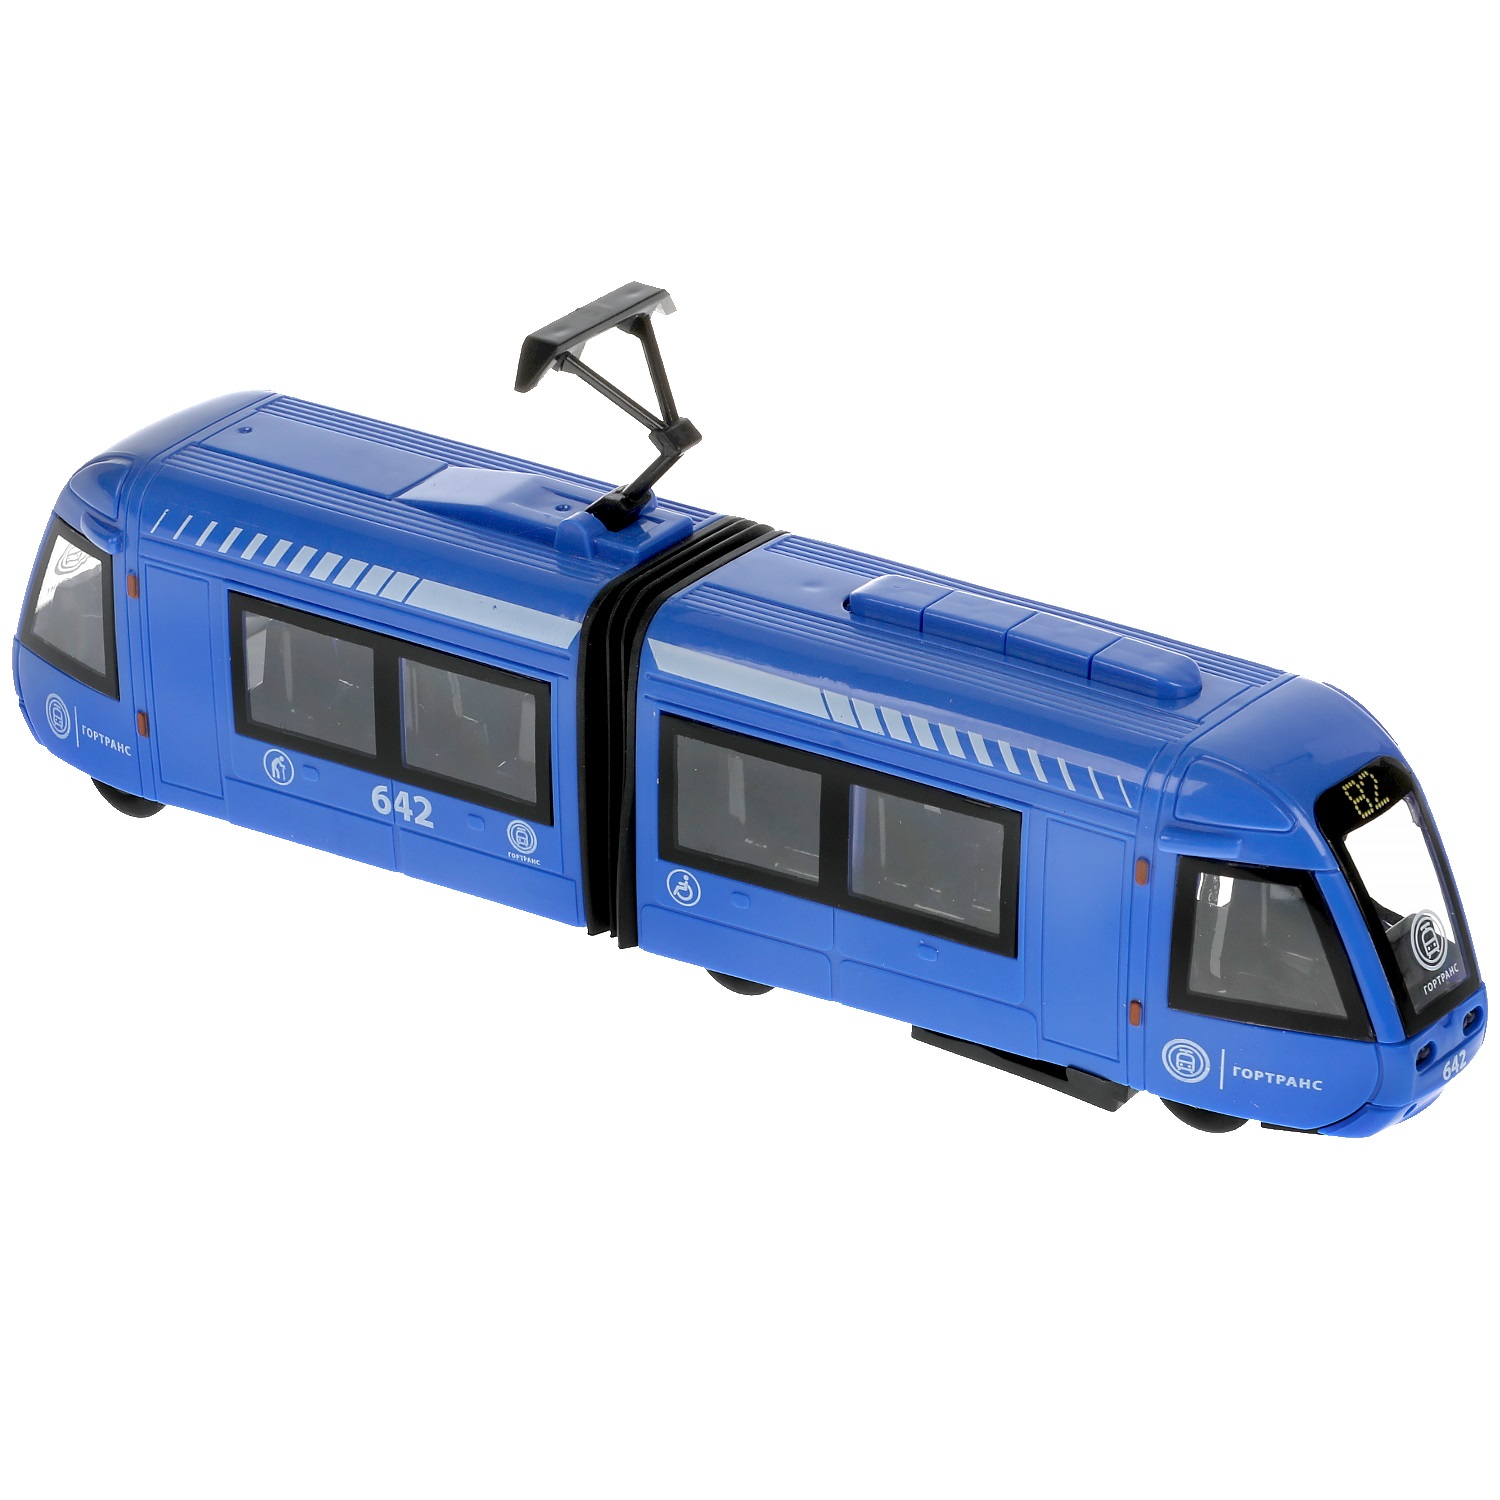 Модель Травмвай с резинкой 30 см свет-звук двери открываются пластиковая синий  